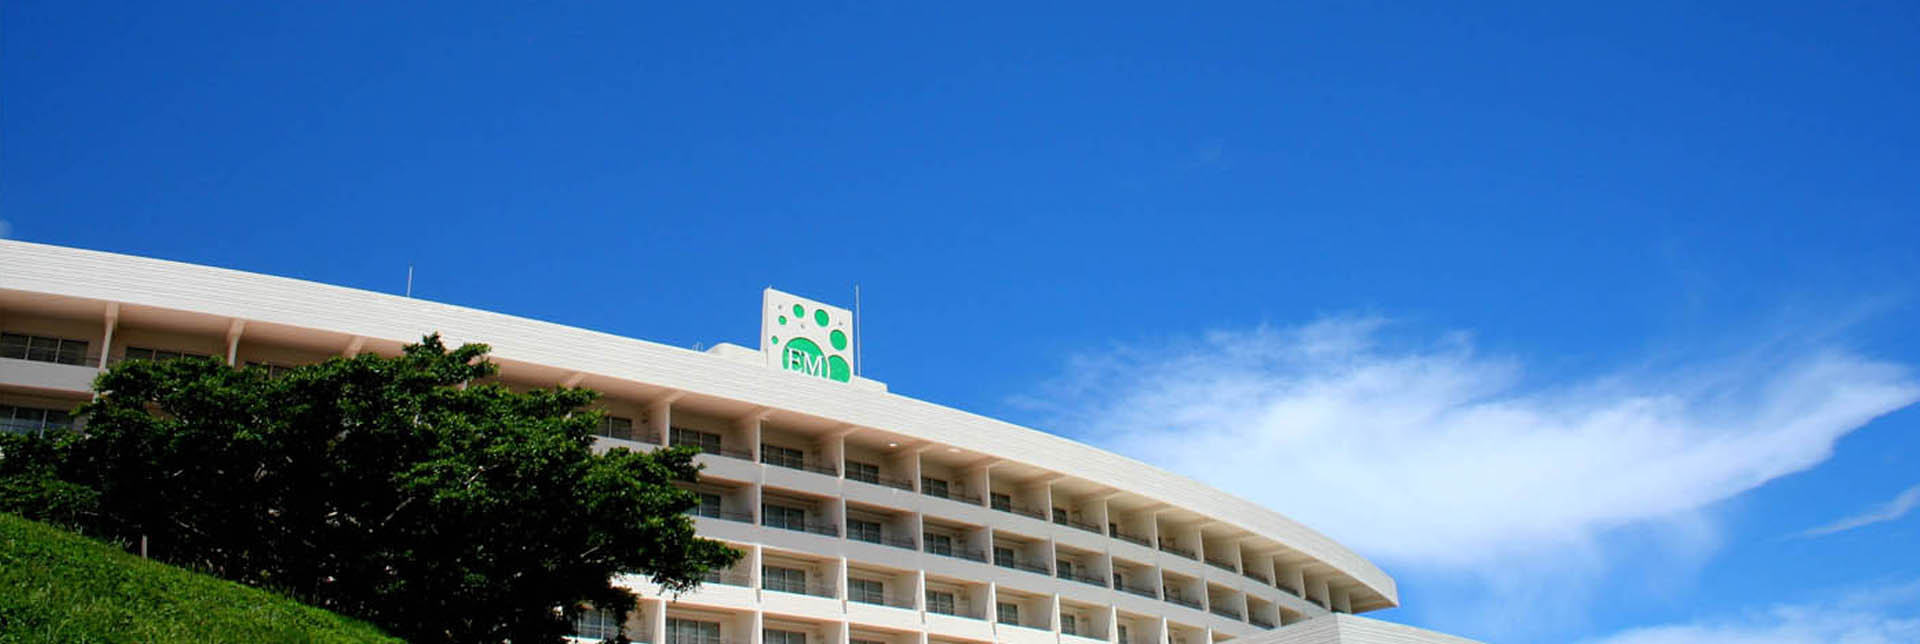 EM e.V. Hotel